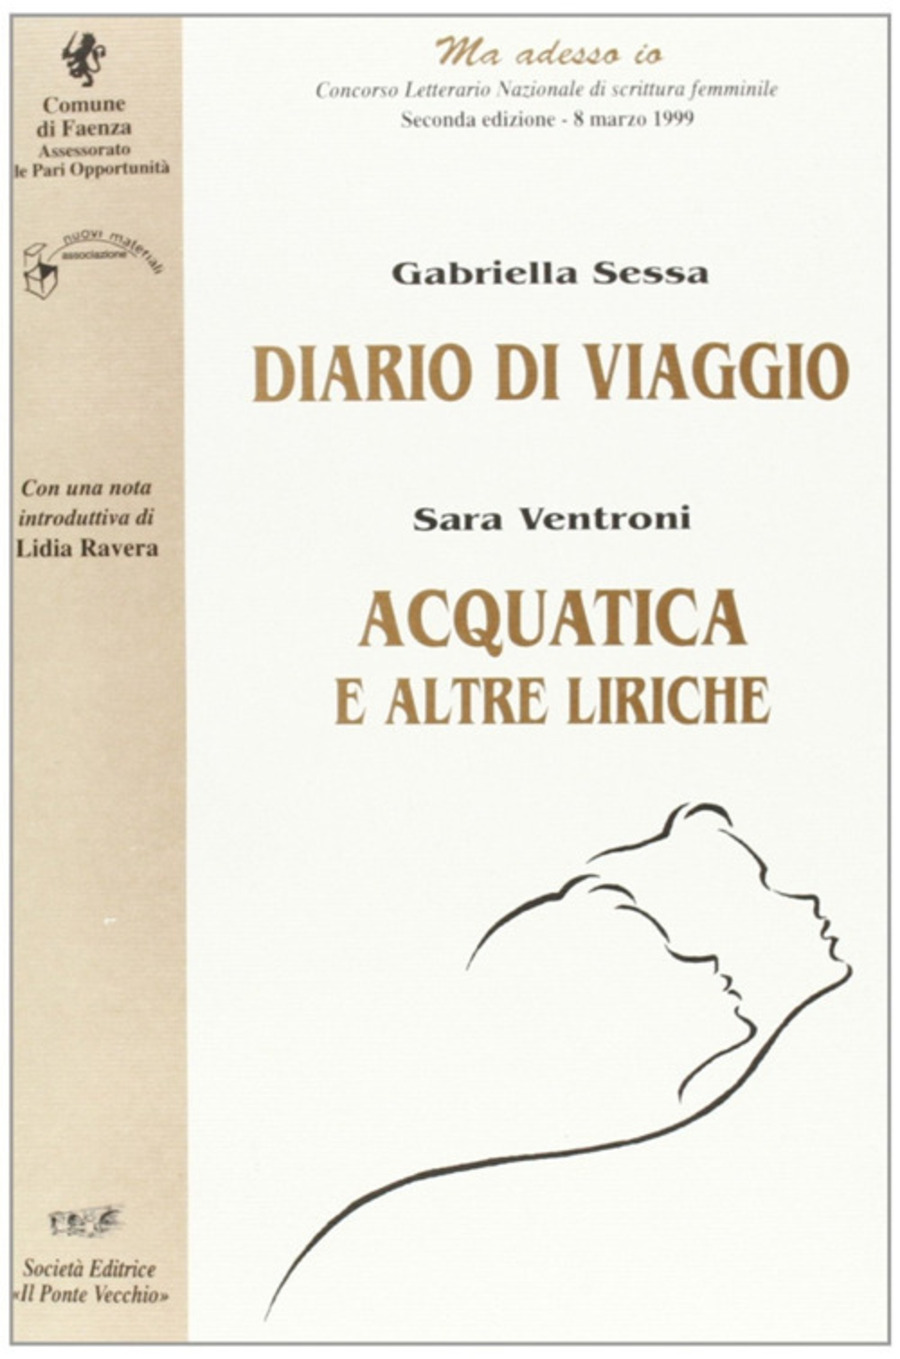 Diario di viaggio-Acquatica. «Ma adesso io». Concorso letterario nazionale di scrittura femminile (Faenza, 1999)